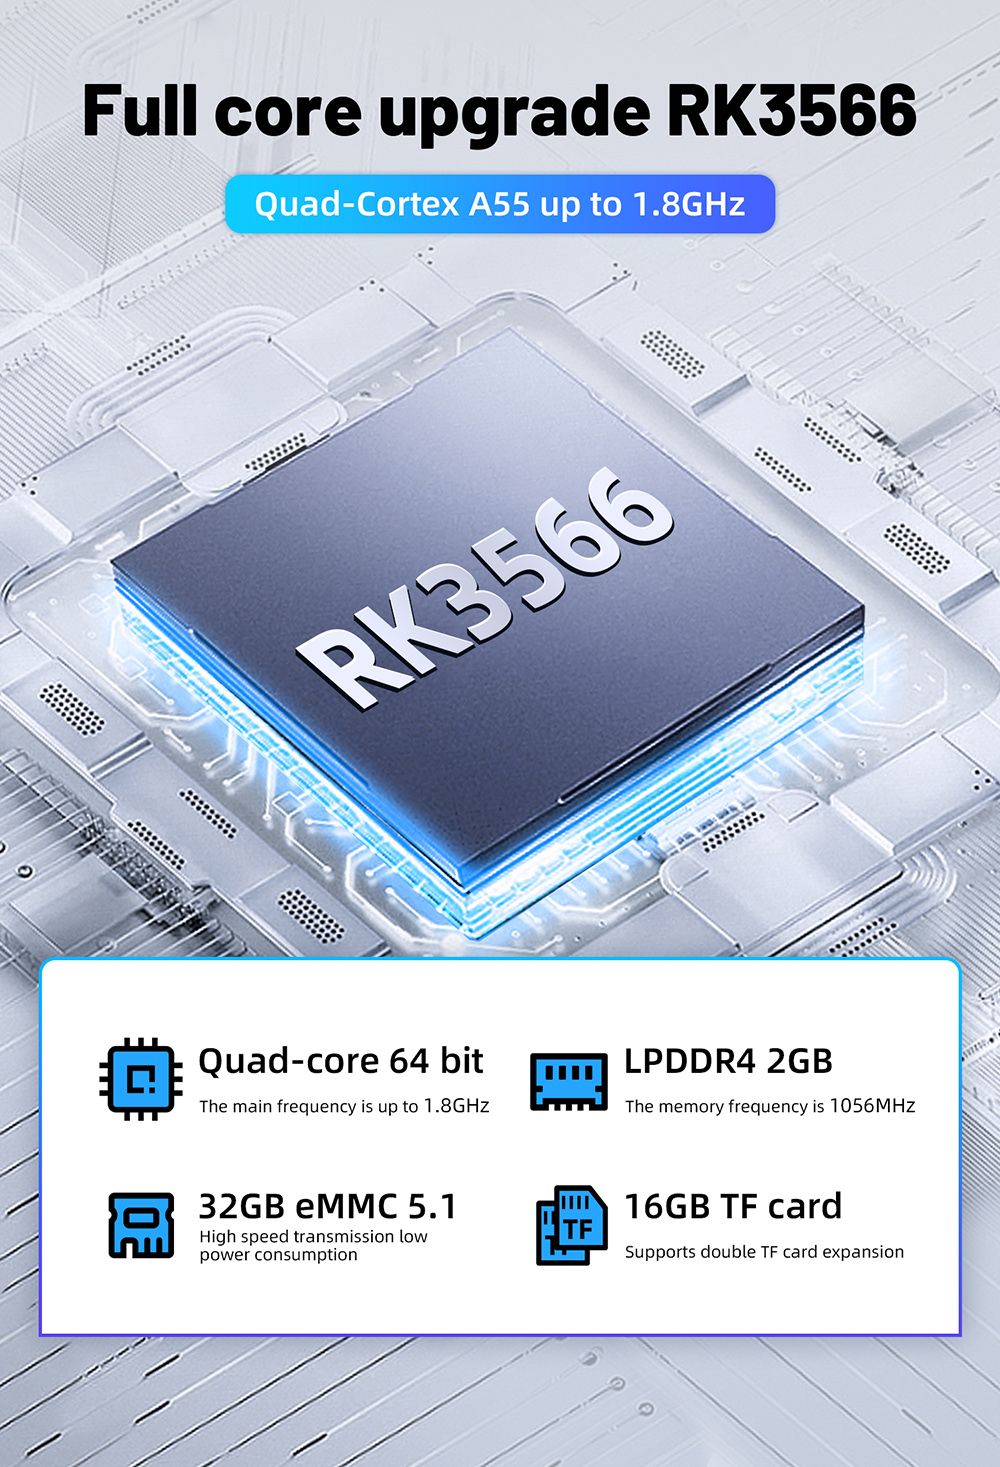 Console de jeu portable ANBERNIC RG353M,  écran IPS 3.5 '' Android 32 Go eMMC haute vitesse 5.1 Linux 16 Go,  carte TF 256 Go - Bleu